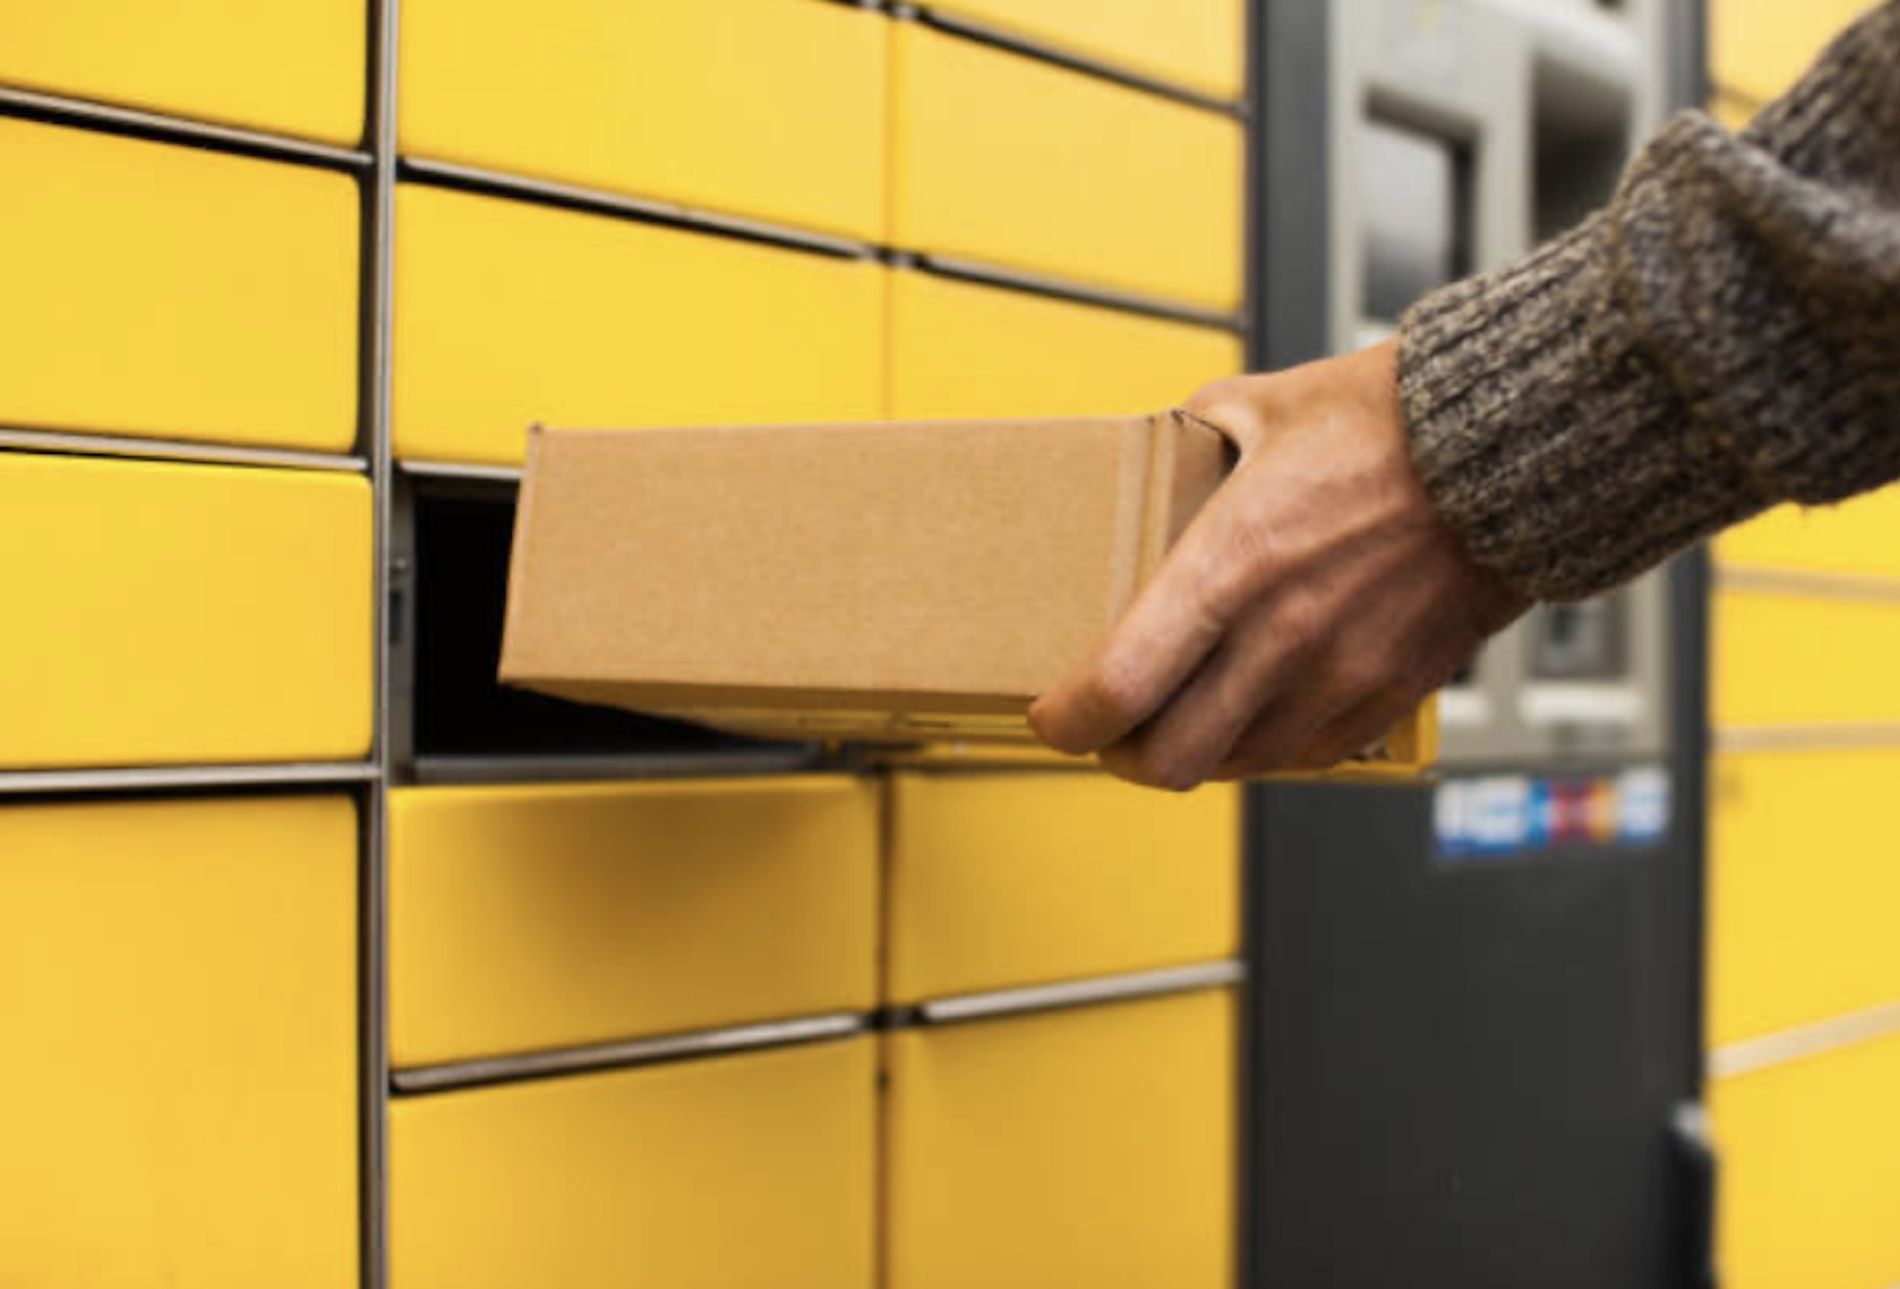 La entrega no domiciliaria envíos paquetería de comercio electrónico en España